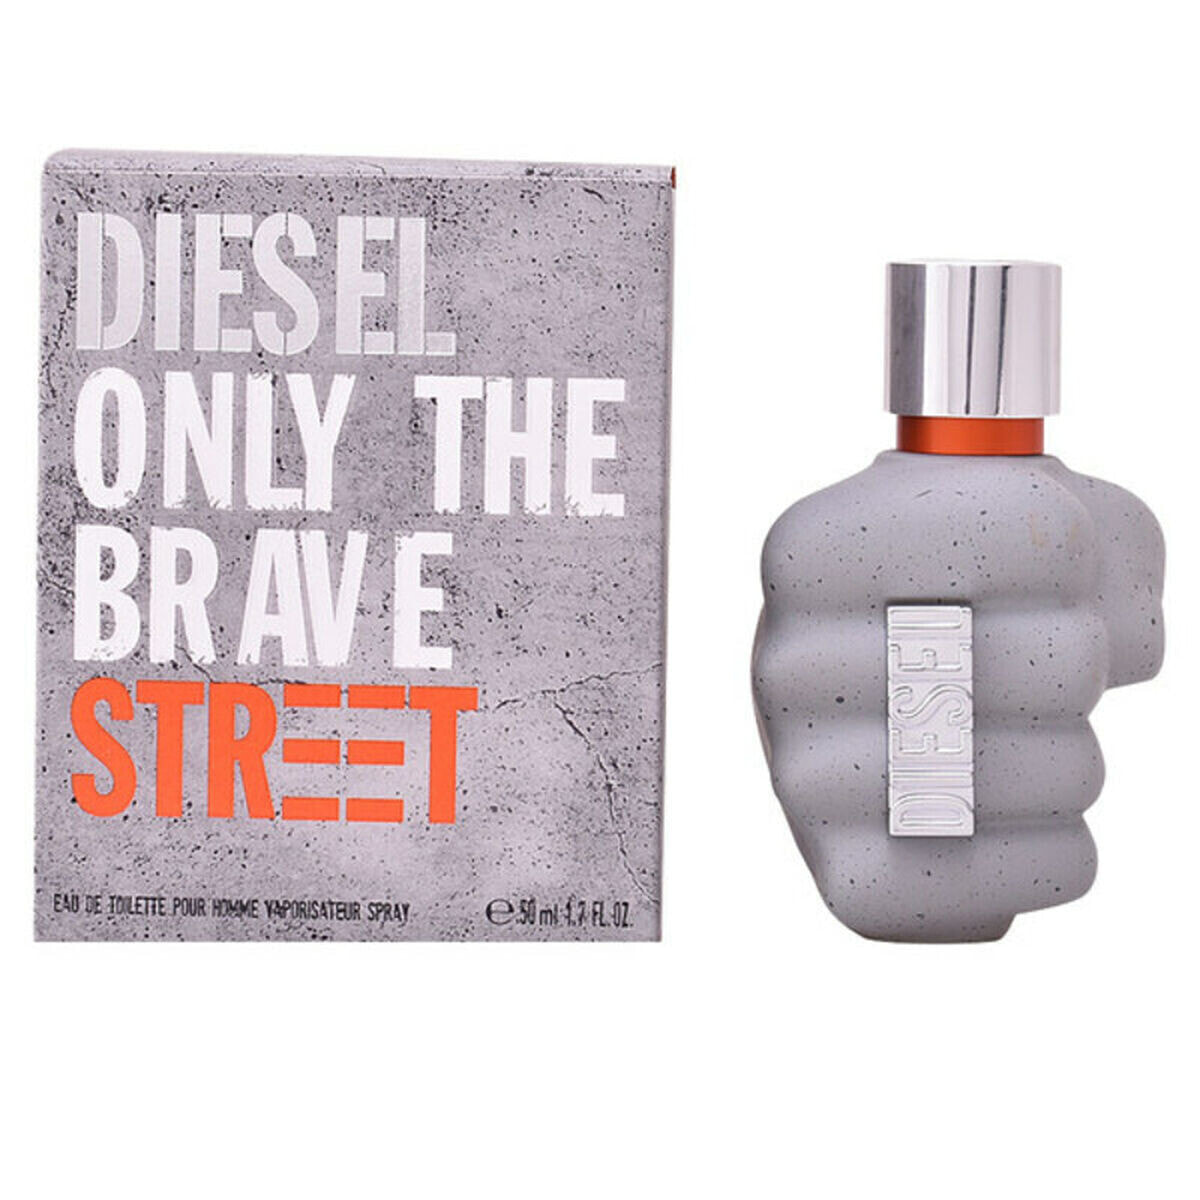 Мужская парфюмерия Diesel Only The Brave Street (50 ml)